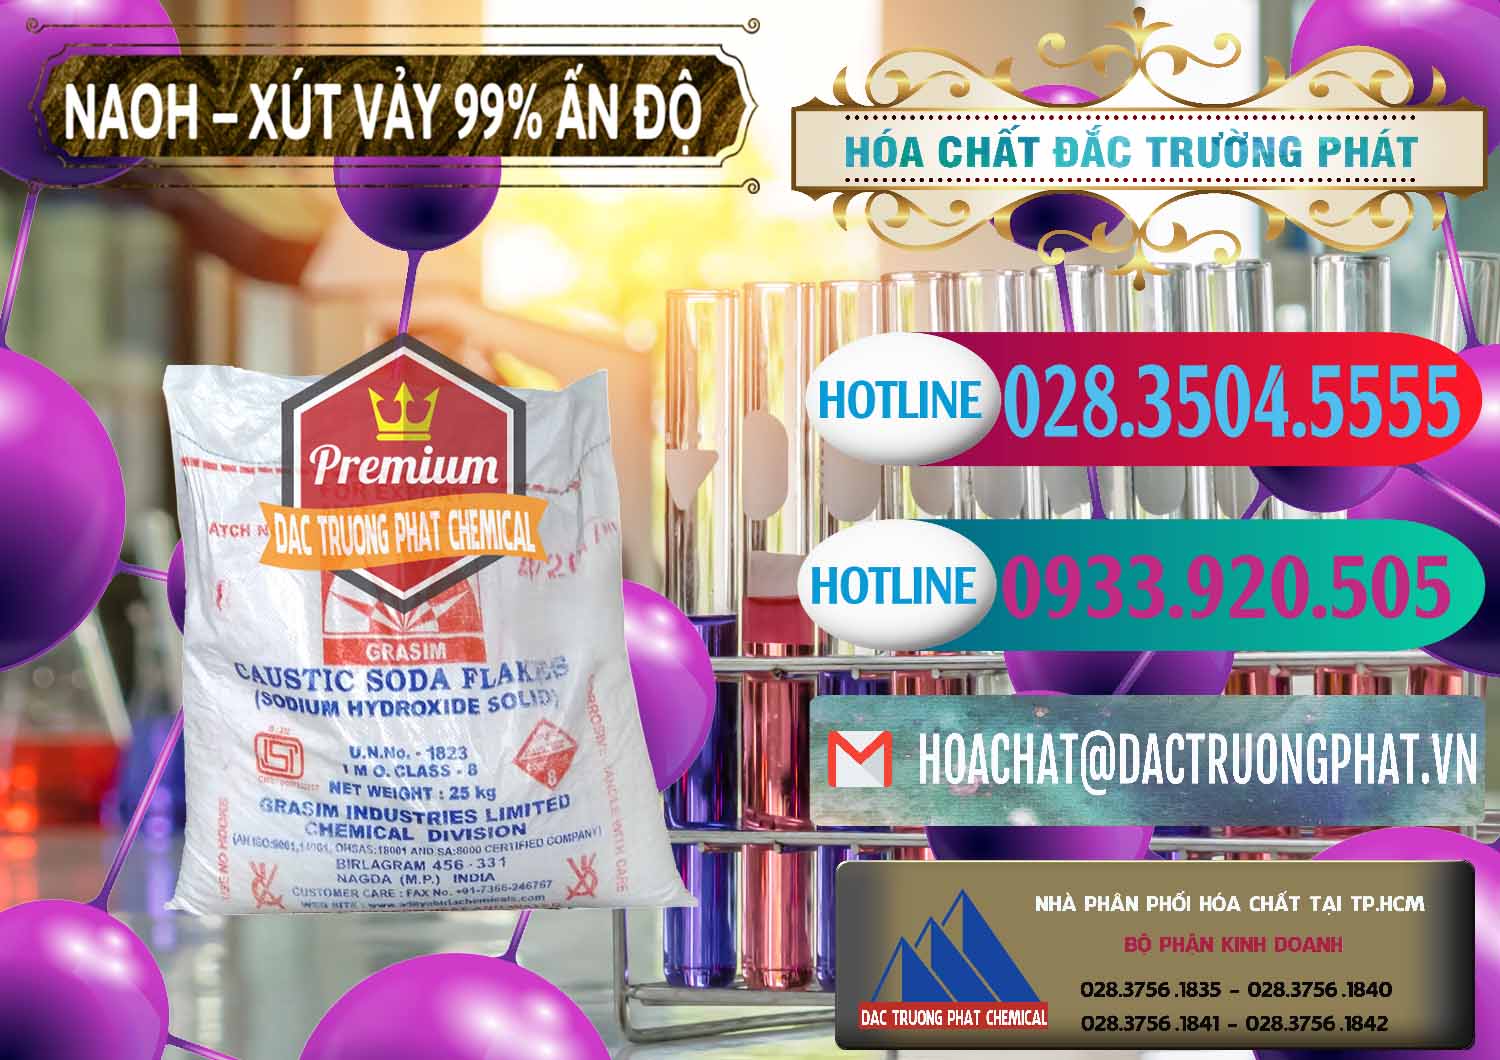 Cty bán và cung ứng Xút Vảy - NaOH Vảy 99% Aditya Birla Grasim Ấn Độ India - 0171 - Nơi chuyên nhập khẩu và phân phối hóa chất tại TP.HCM - truongphat.vn